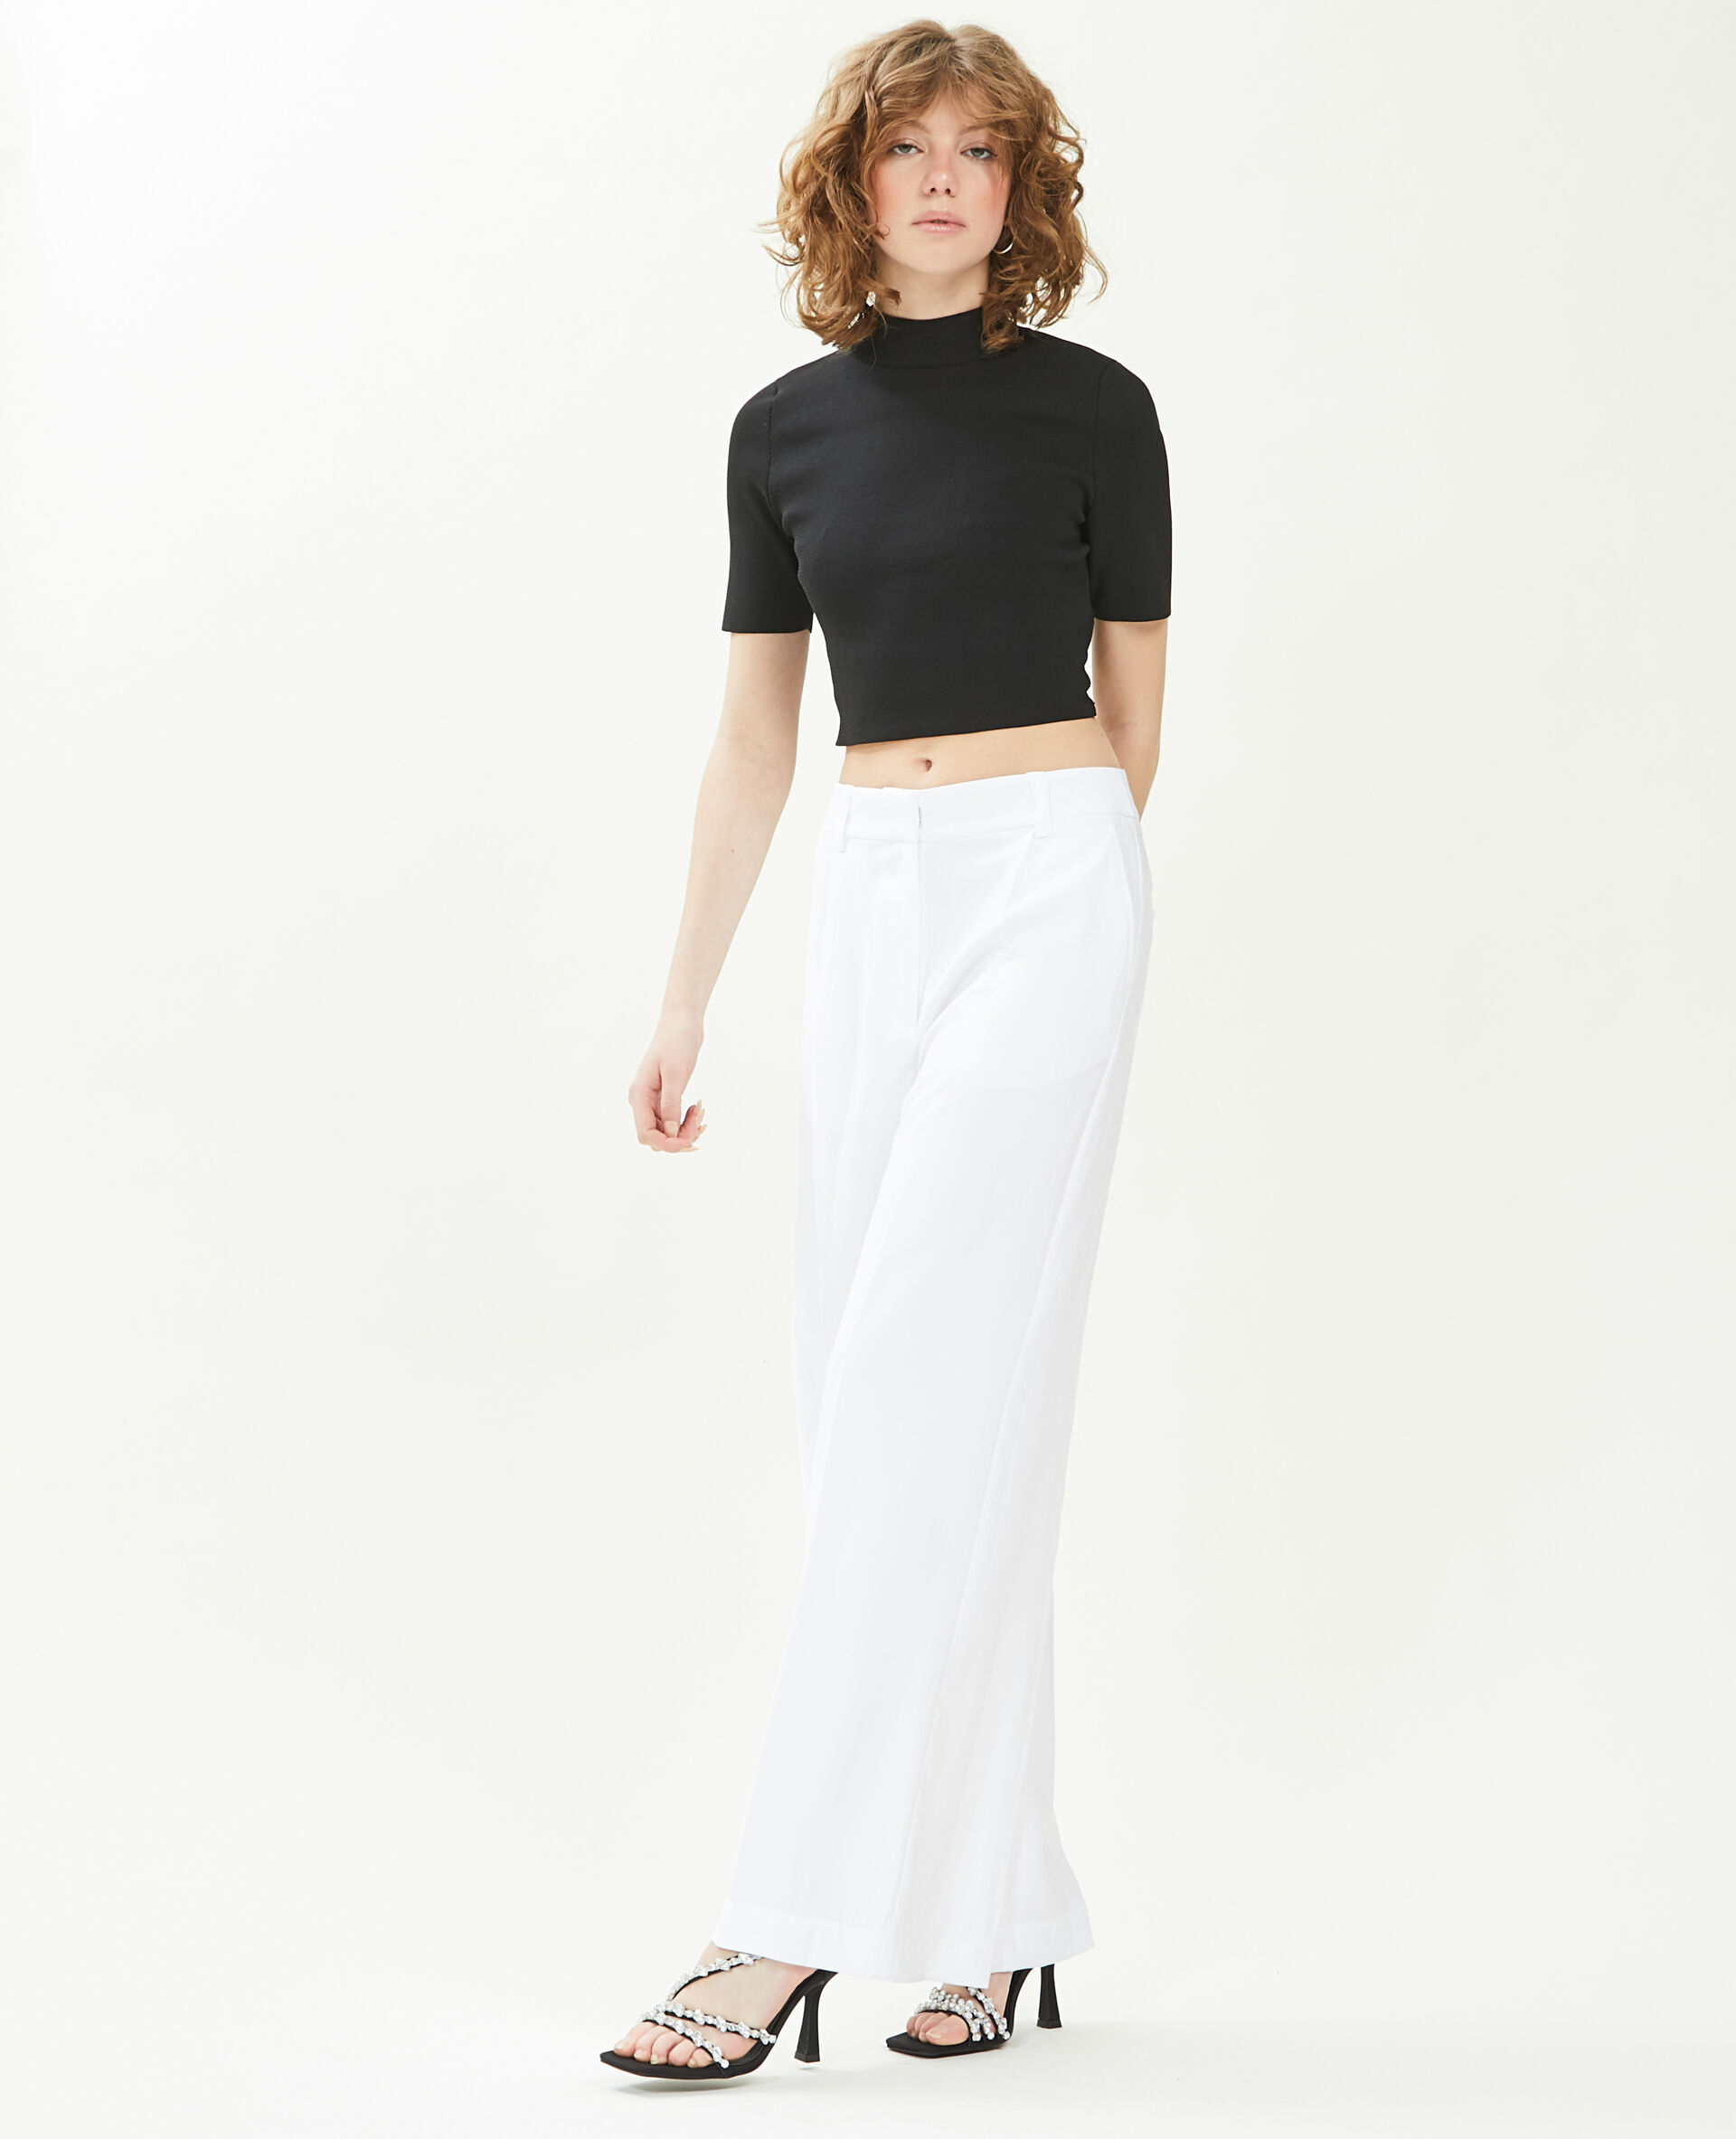 Pantalon large en toile fluide Femme - Couleur blanc - Taille 40 - Pantalon Femme - PIMKIE